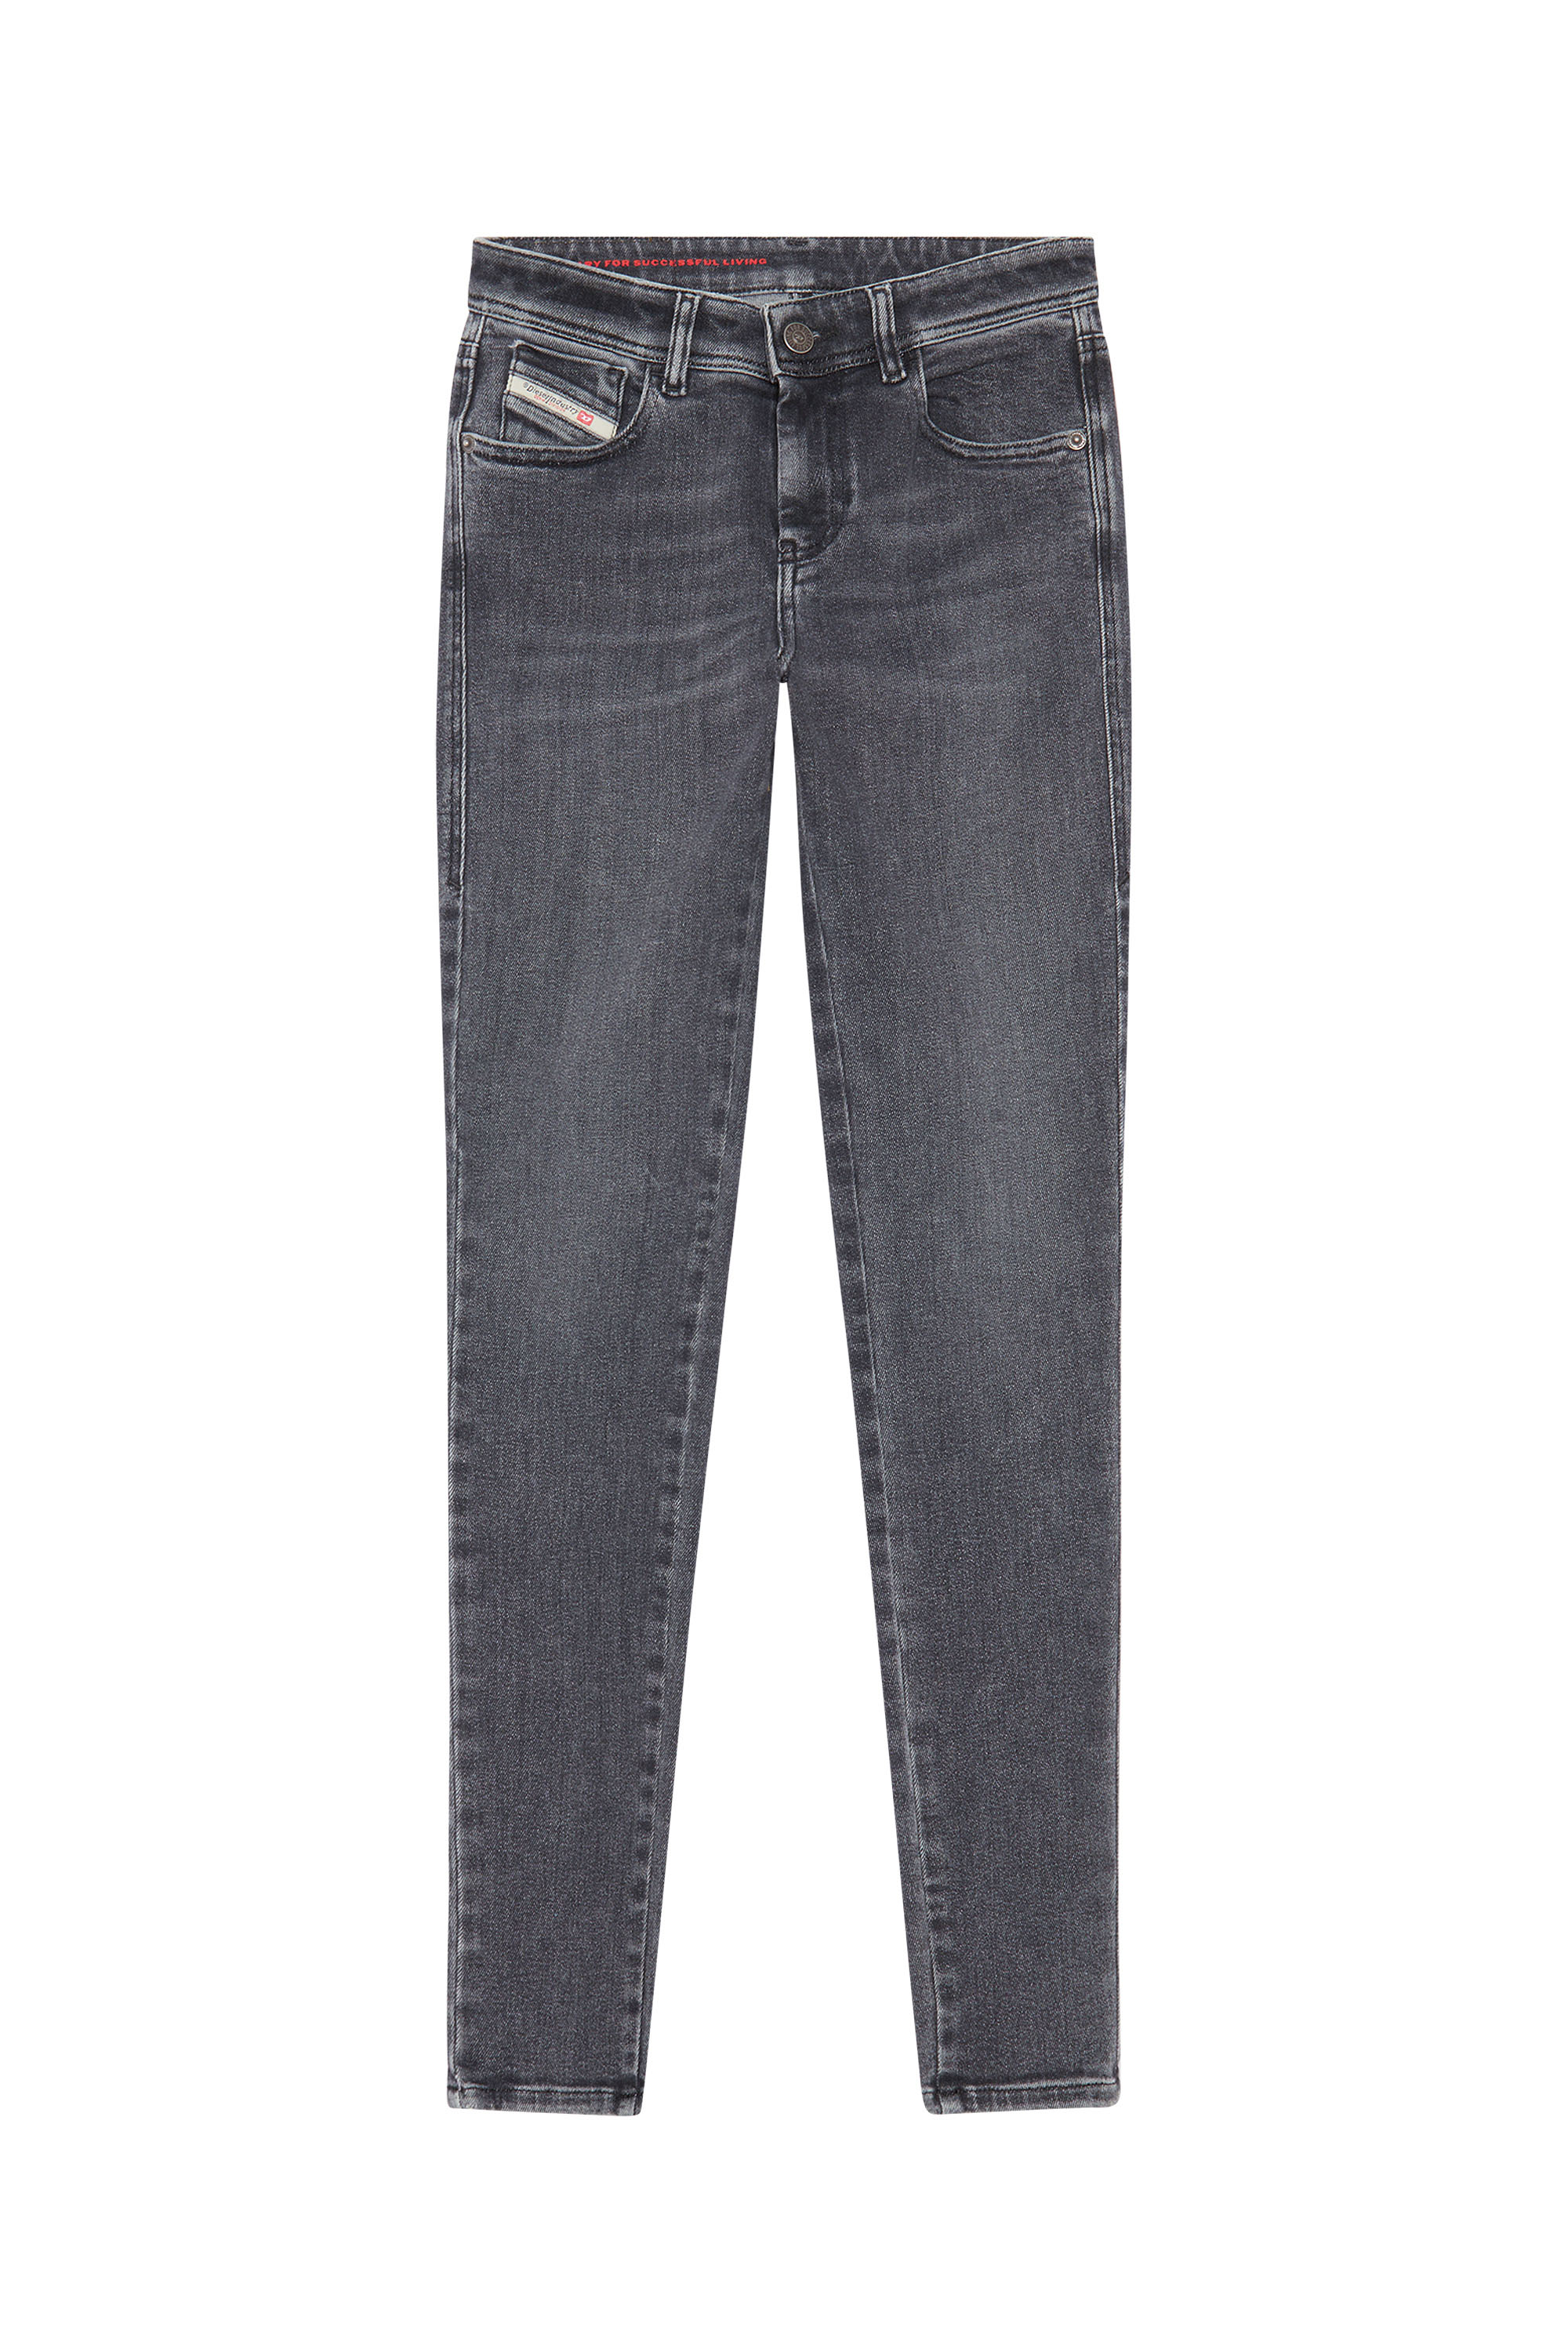 Super skinny Jeans 2017 Slandy 09D61, Noir/Gris foncé - Jeans